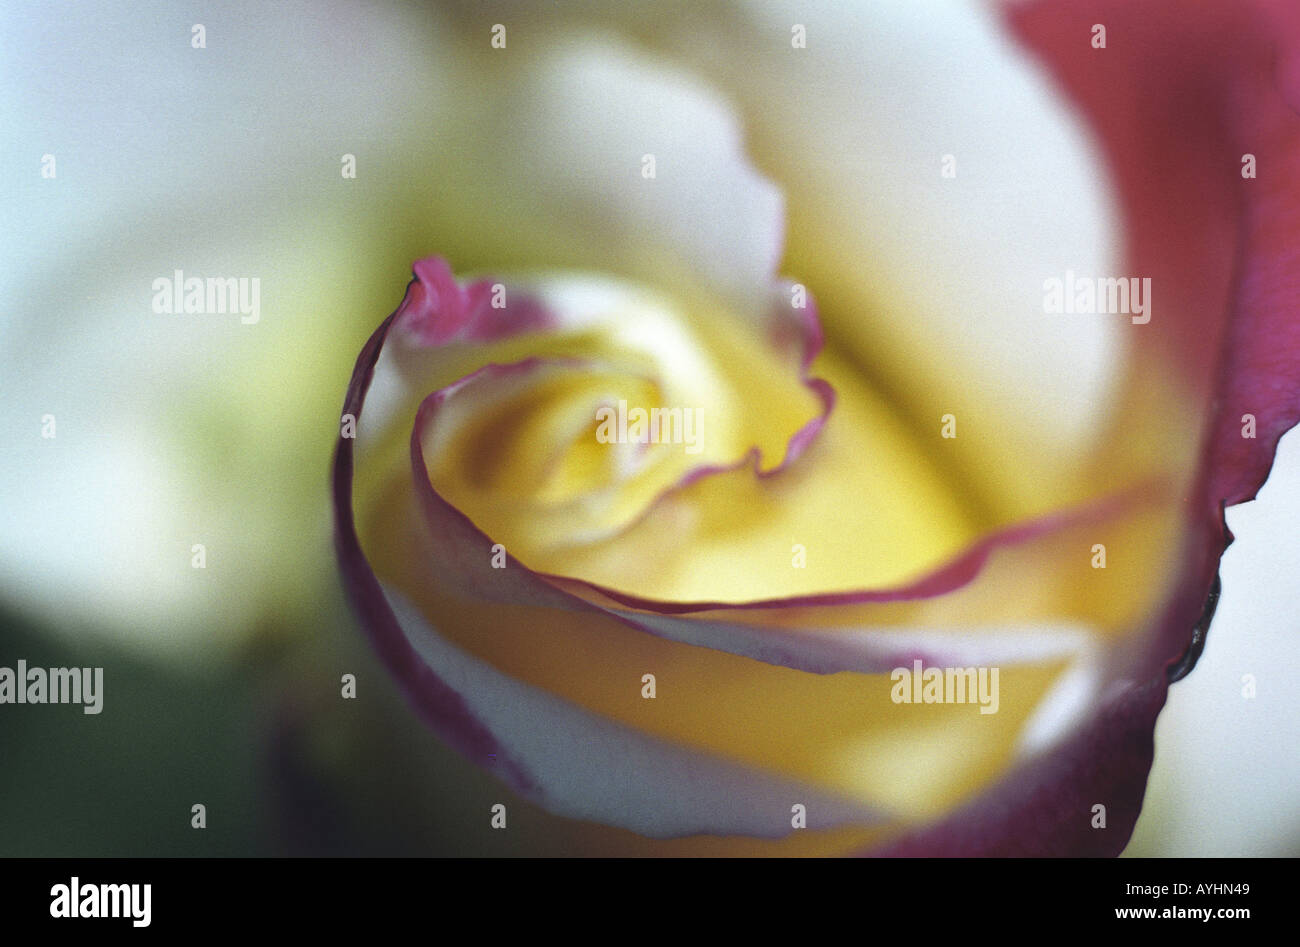 Dettaglio einer hellen Rosenbluete mit pinkfarbenen Raendern an den Bluetenblaettern Foto Stock